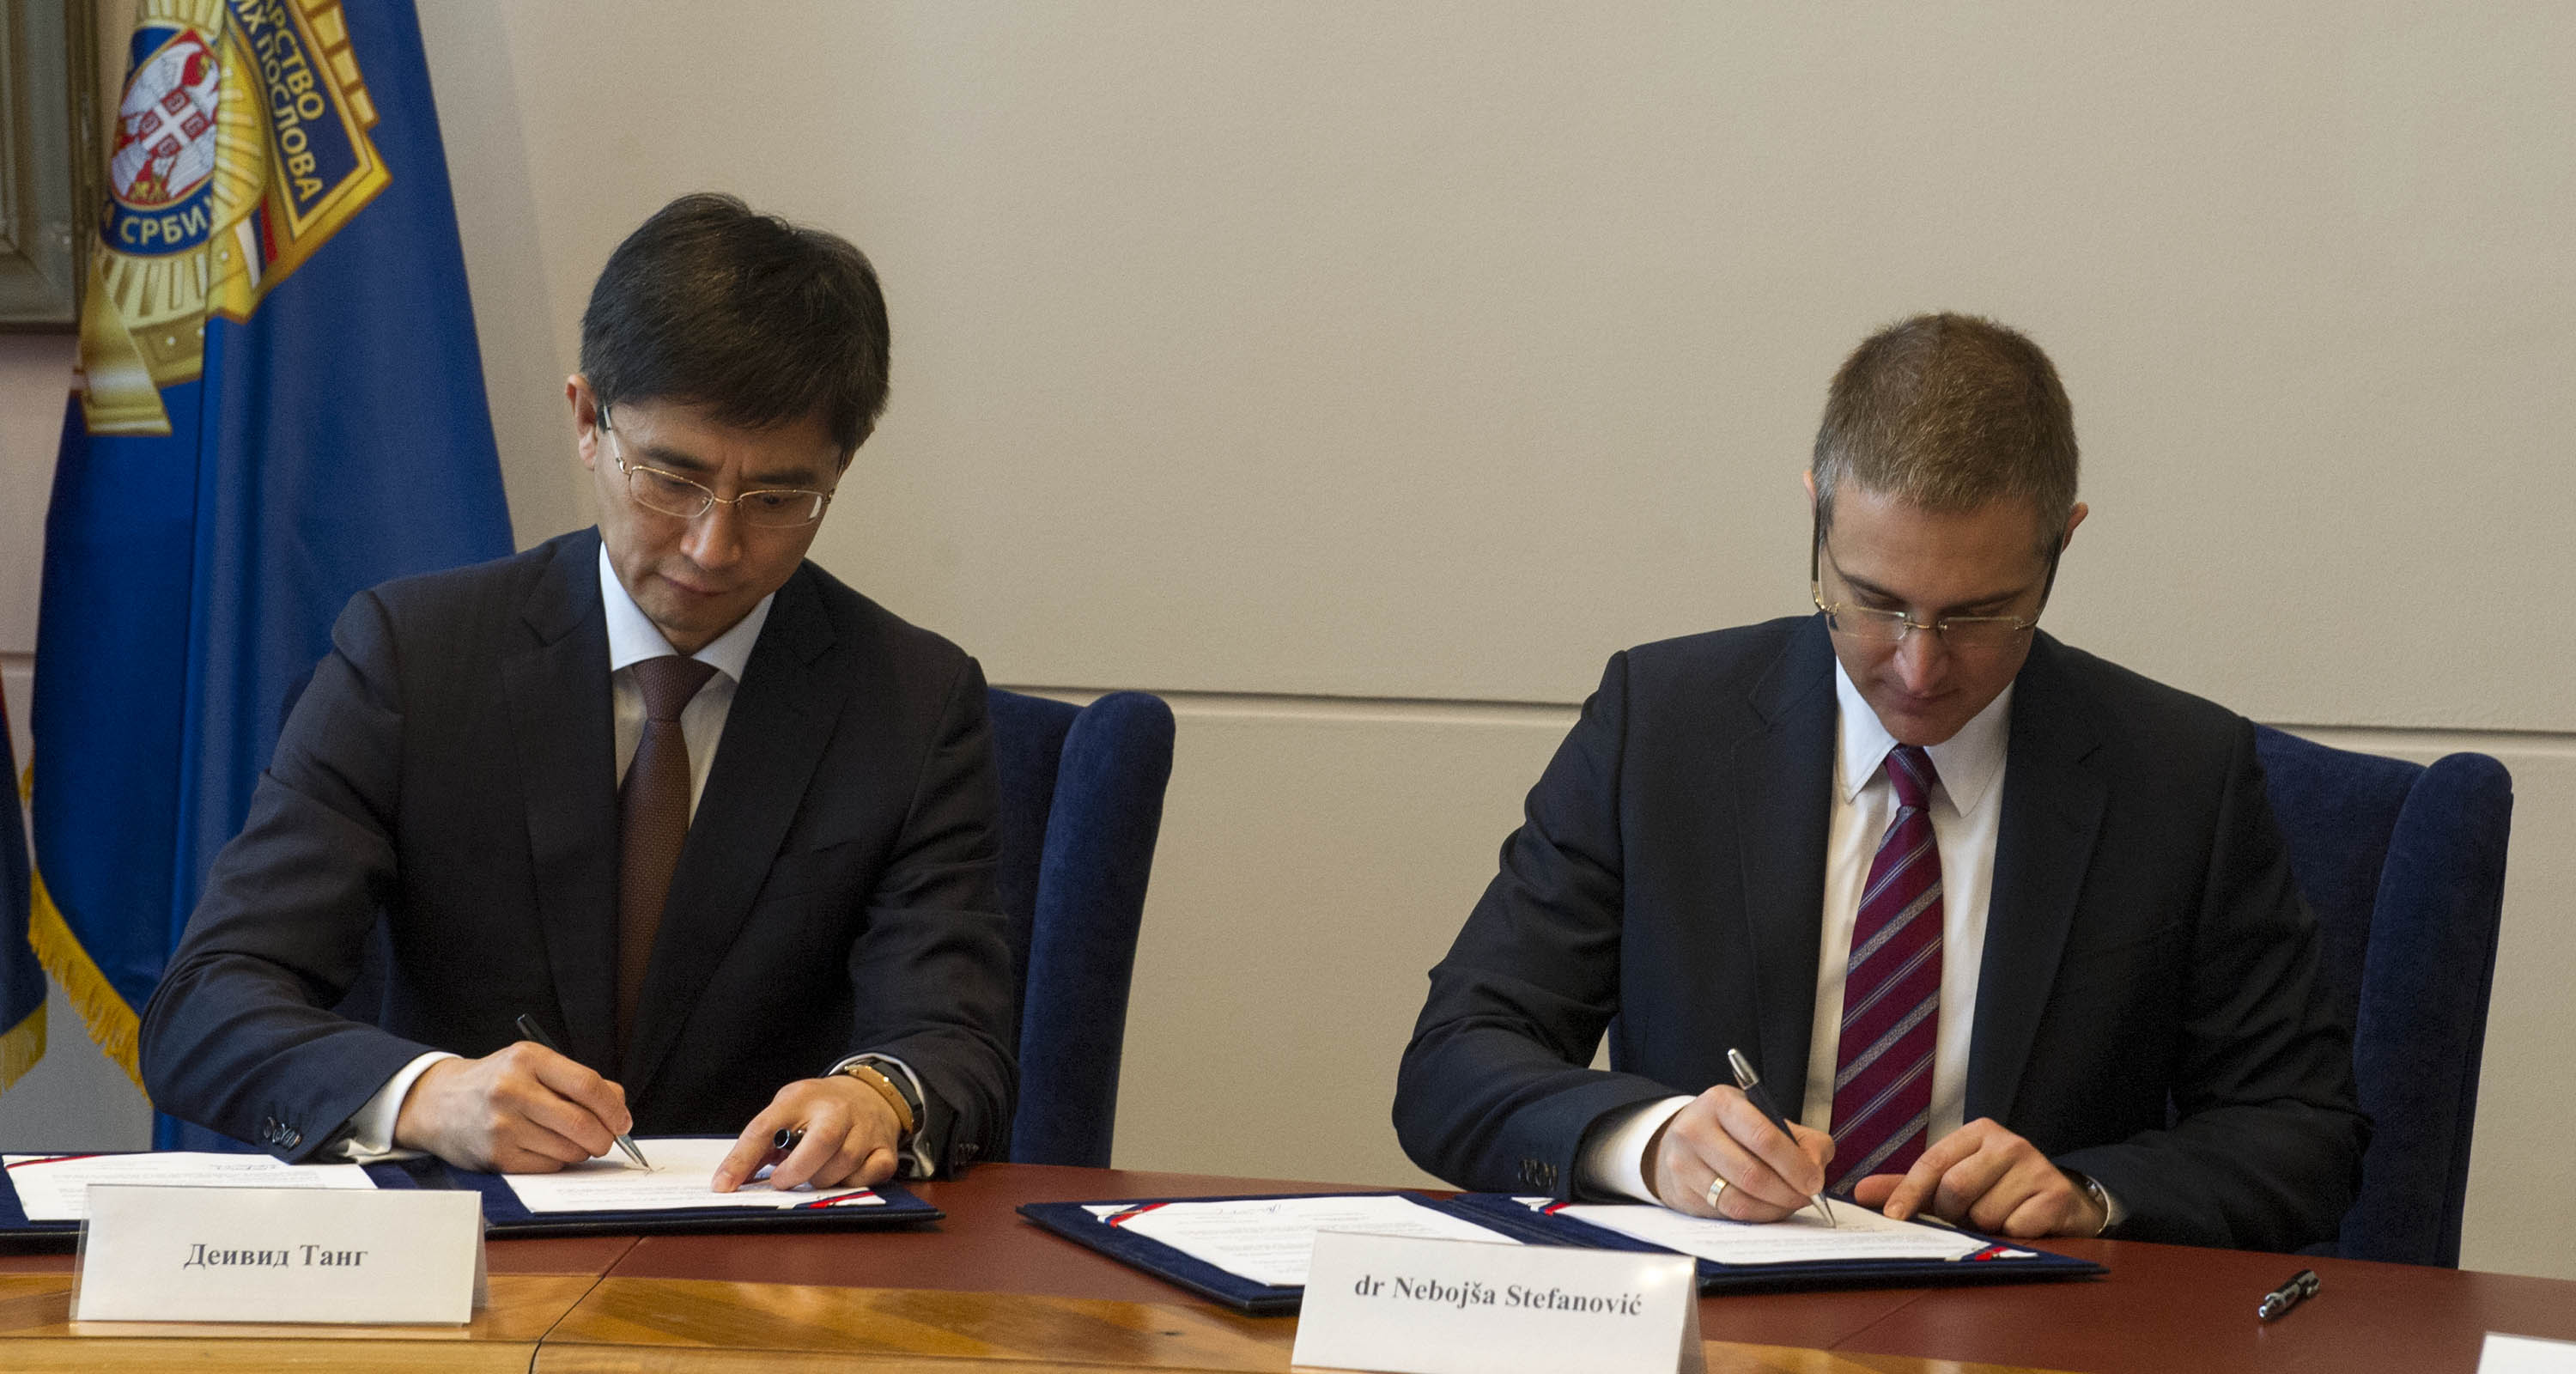 Sporazum MUP i Huawei, uvođenje eLTE tehnologije